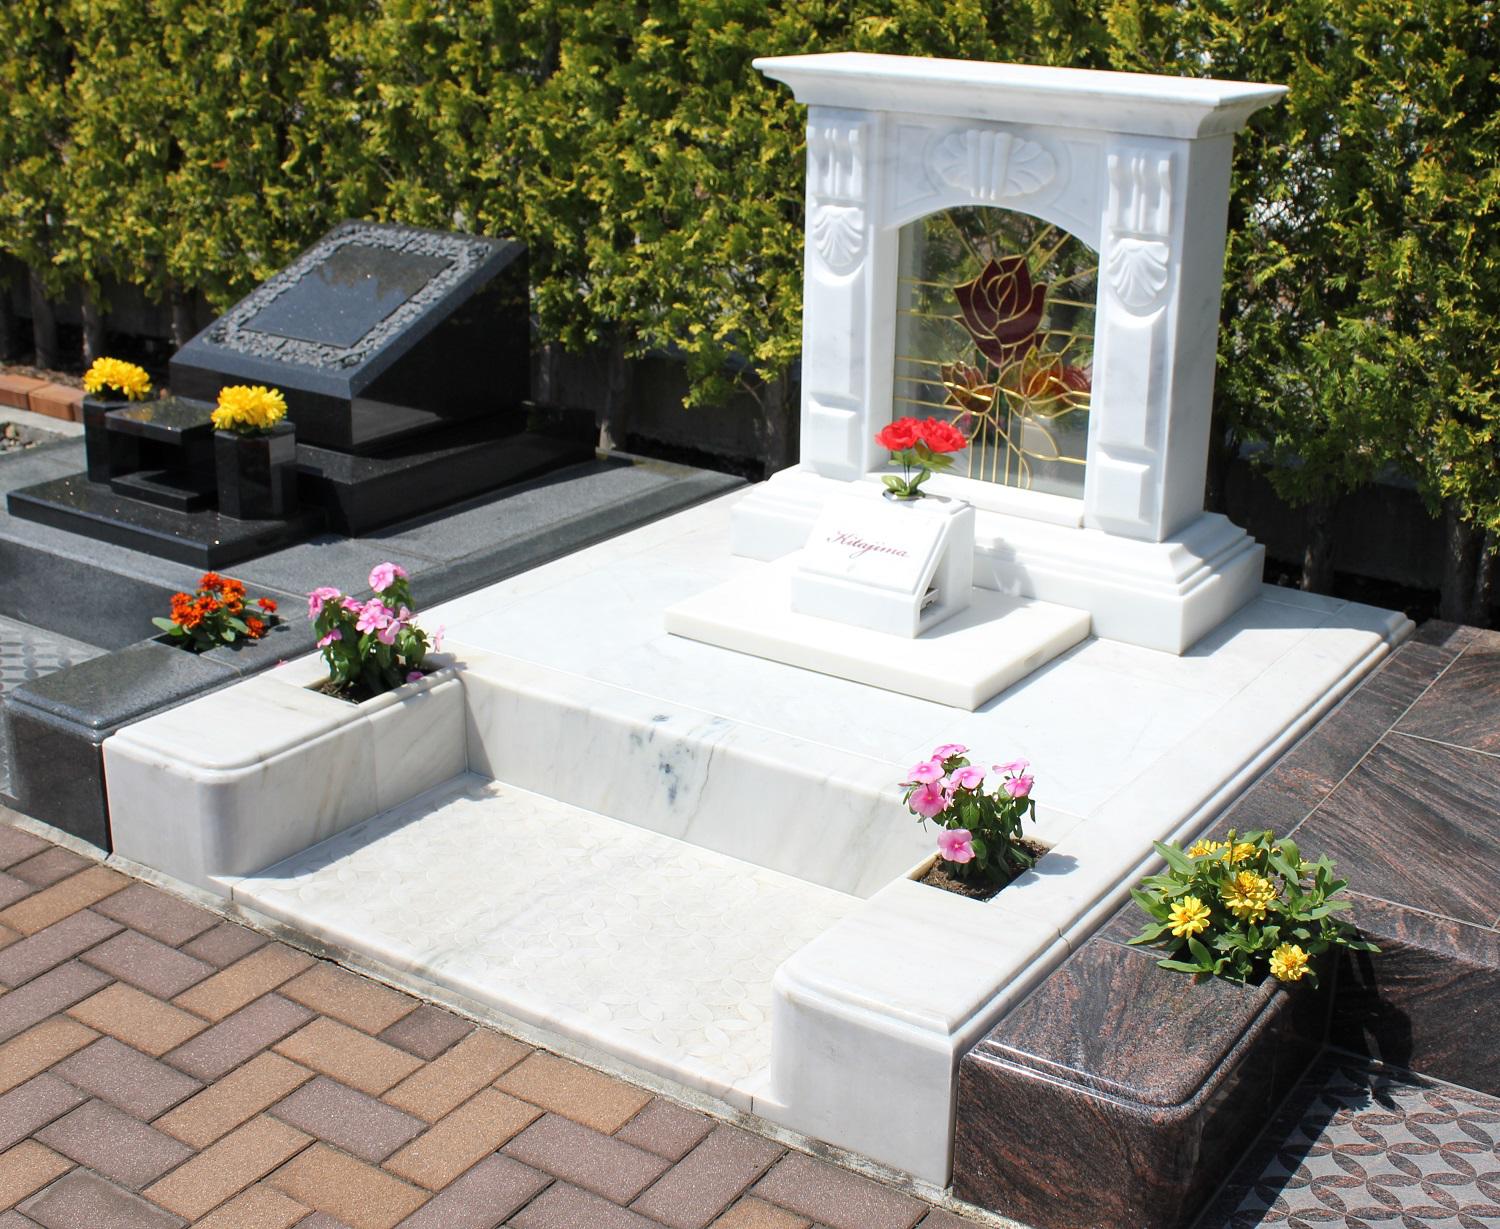 デザイン墓石の雰囲気に最適な公園墓地 エンゼルパーク ブログ 公式 エンゼルパーク 長野県上田市 花と緑に囲まれた公園墓地